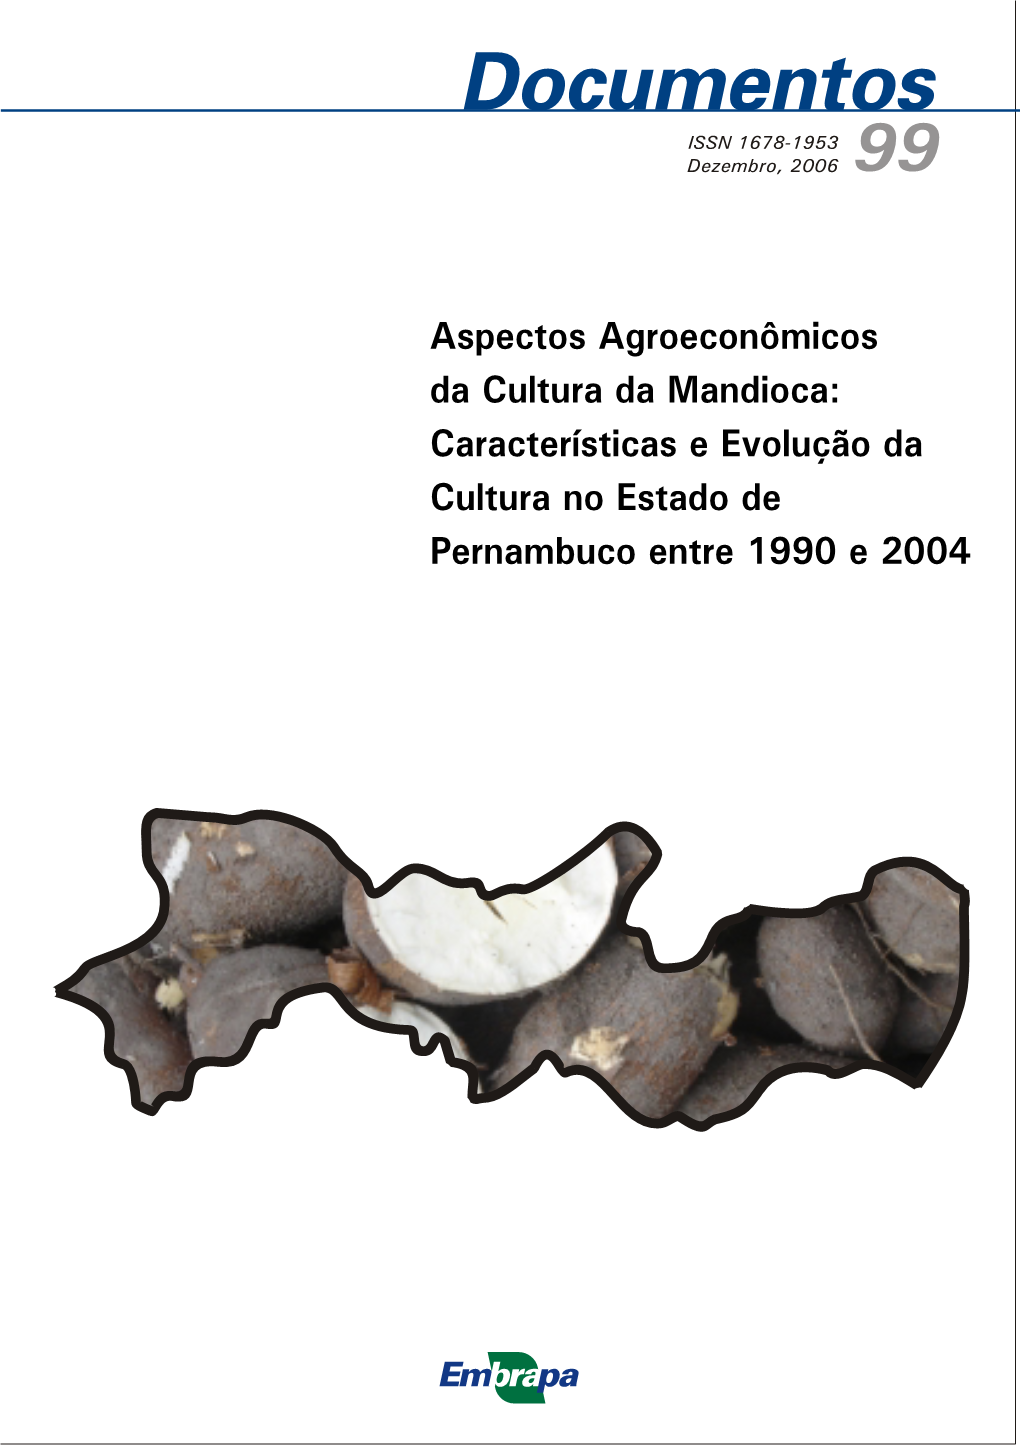 Aspectos Agroeconômicos Da Cultura Da Mandioca: Características E Evolução Da Cultura No Estado De Pernambuco Entre 1990 E 2004 ISSN 1678-1953 Dezembro, 2006